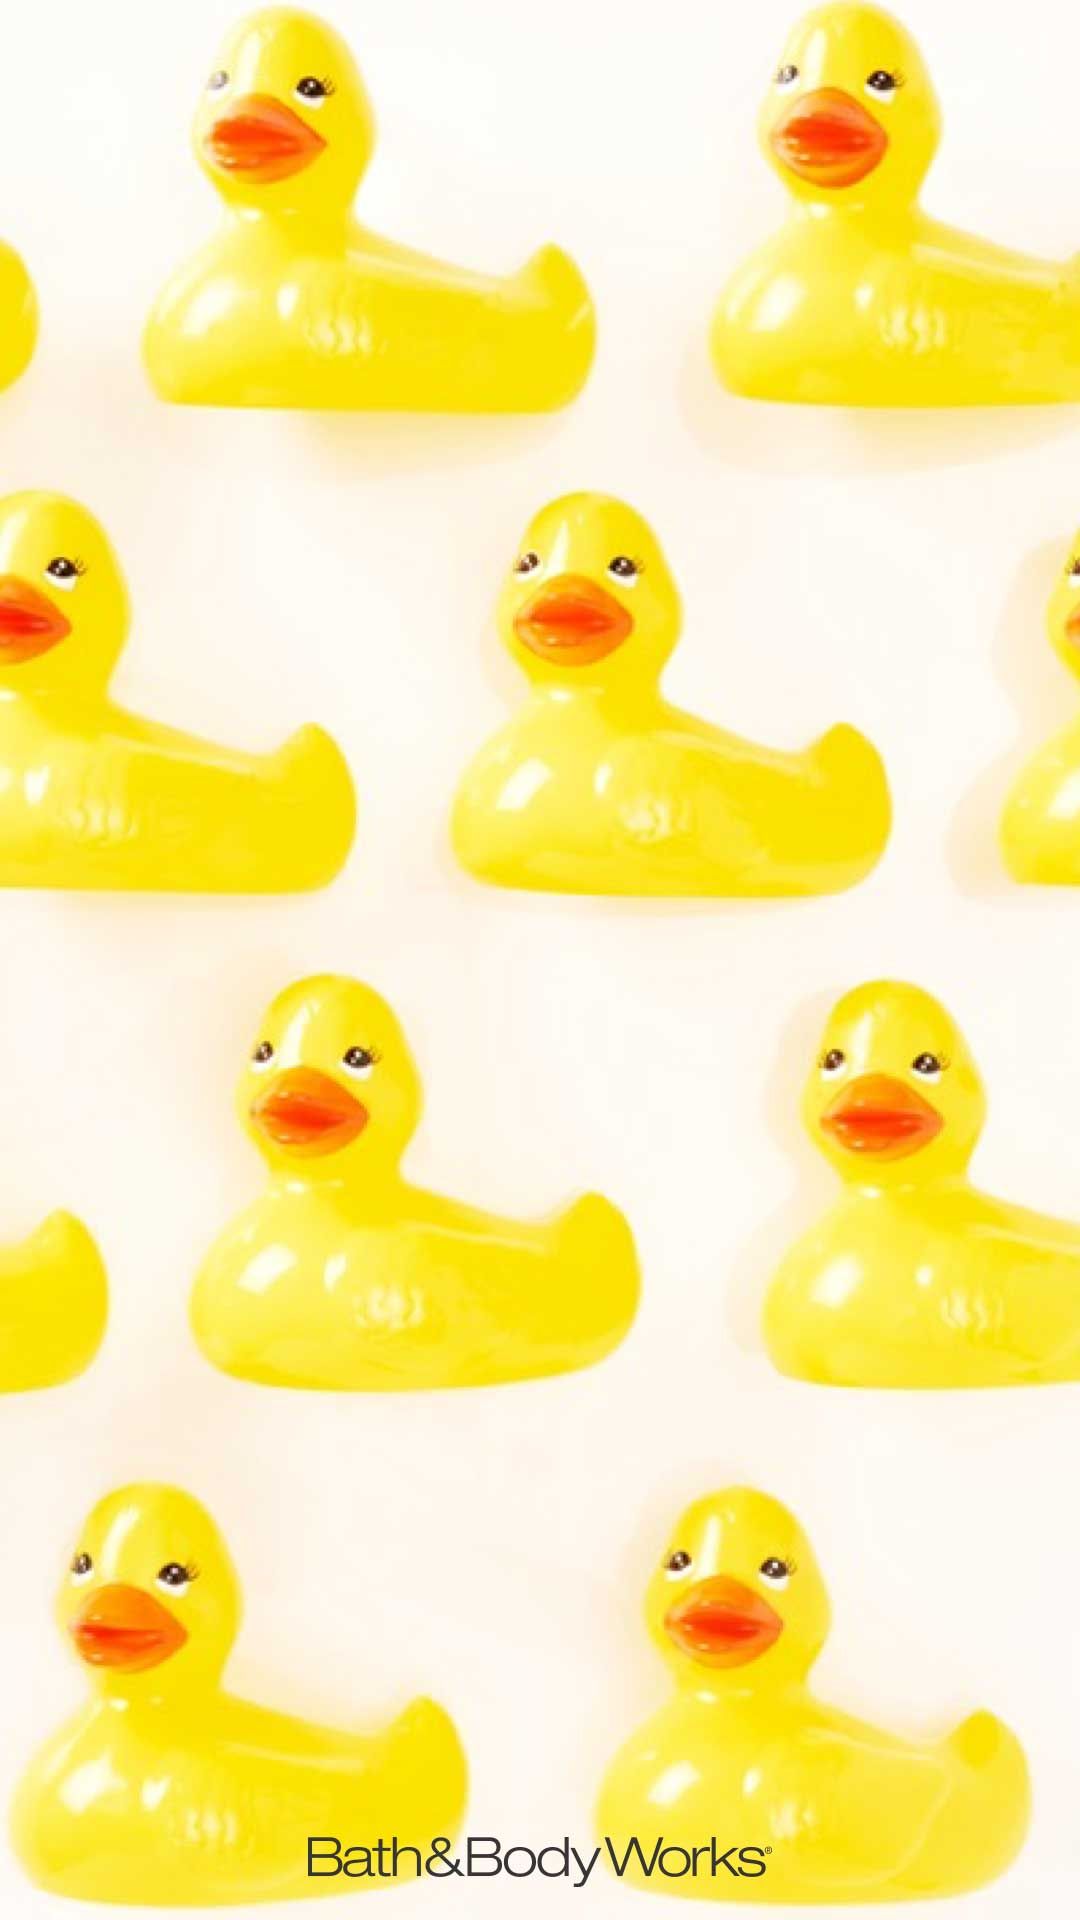 Iphone Rubber Ducky - HD Wallpaper 